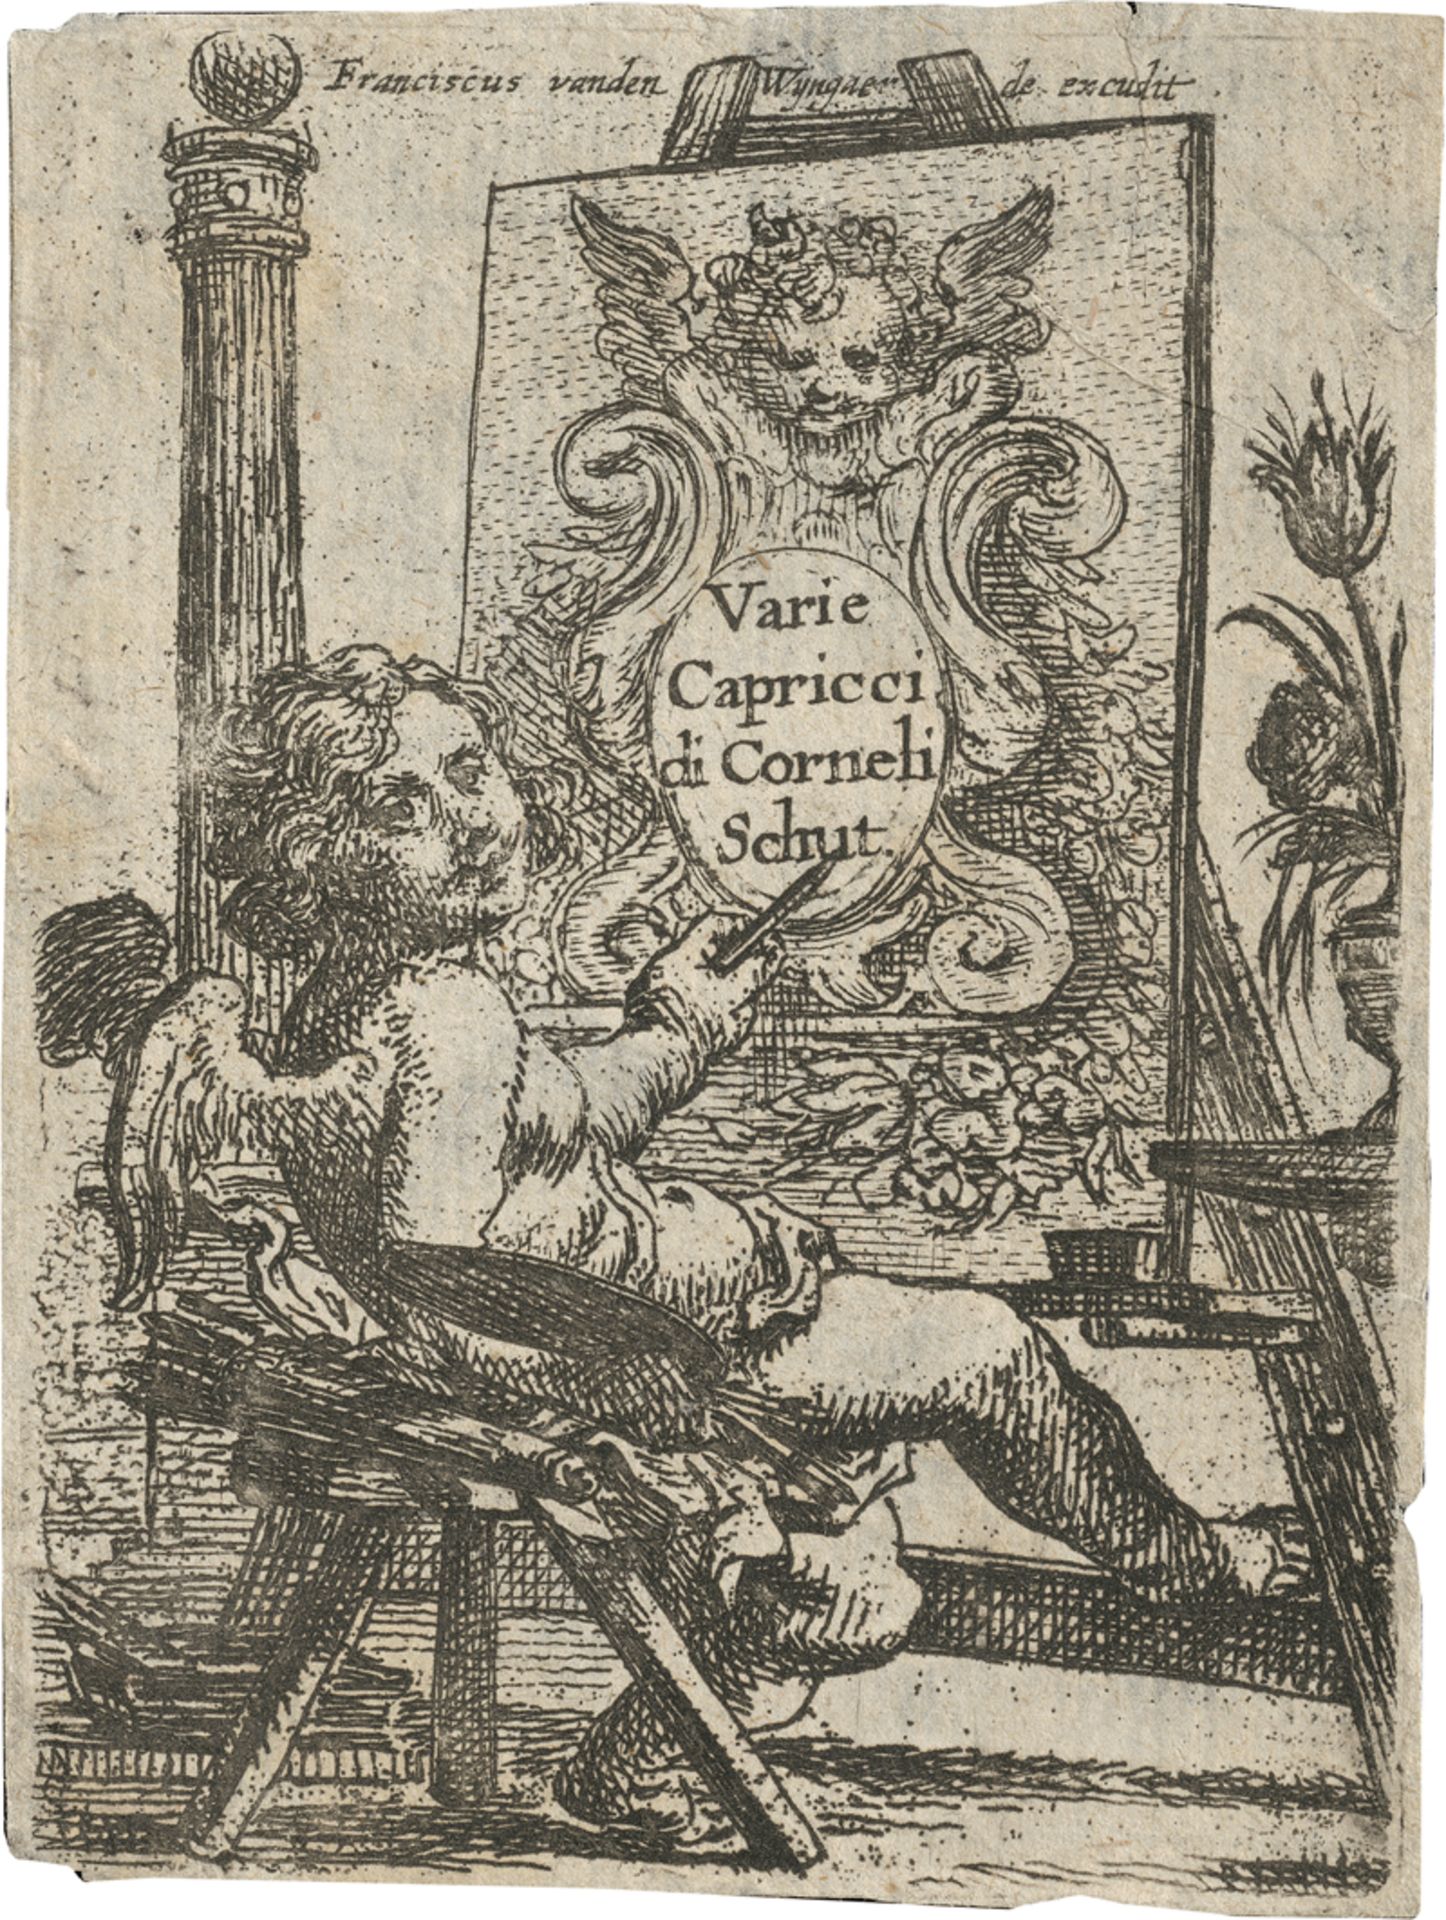 Schut, Cornelis: Religiöse und profane Darstellungen